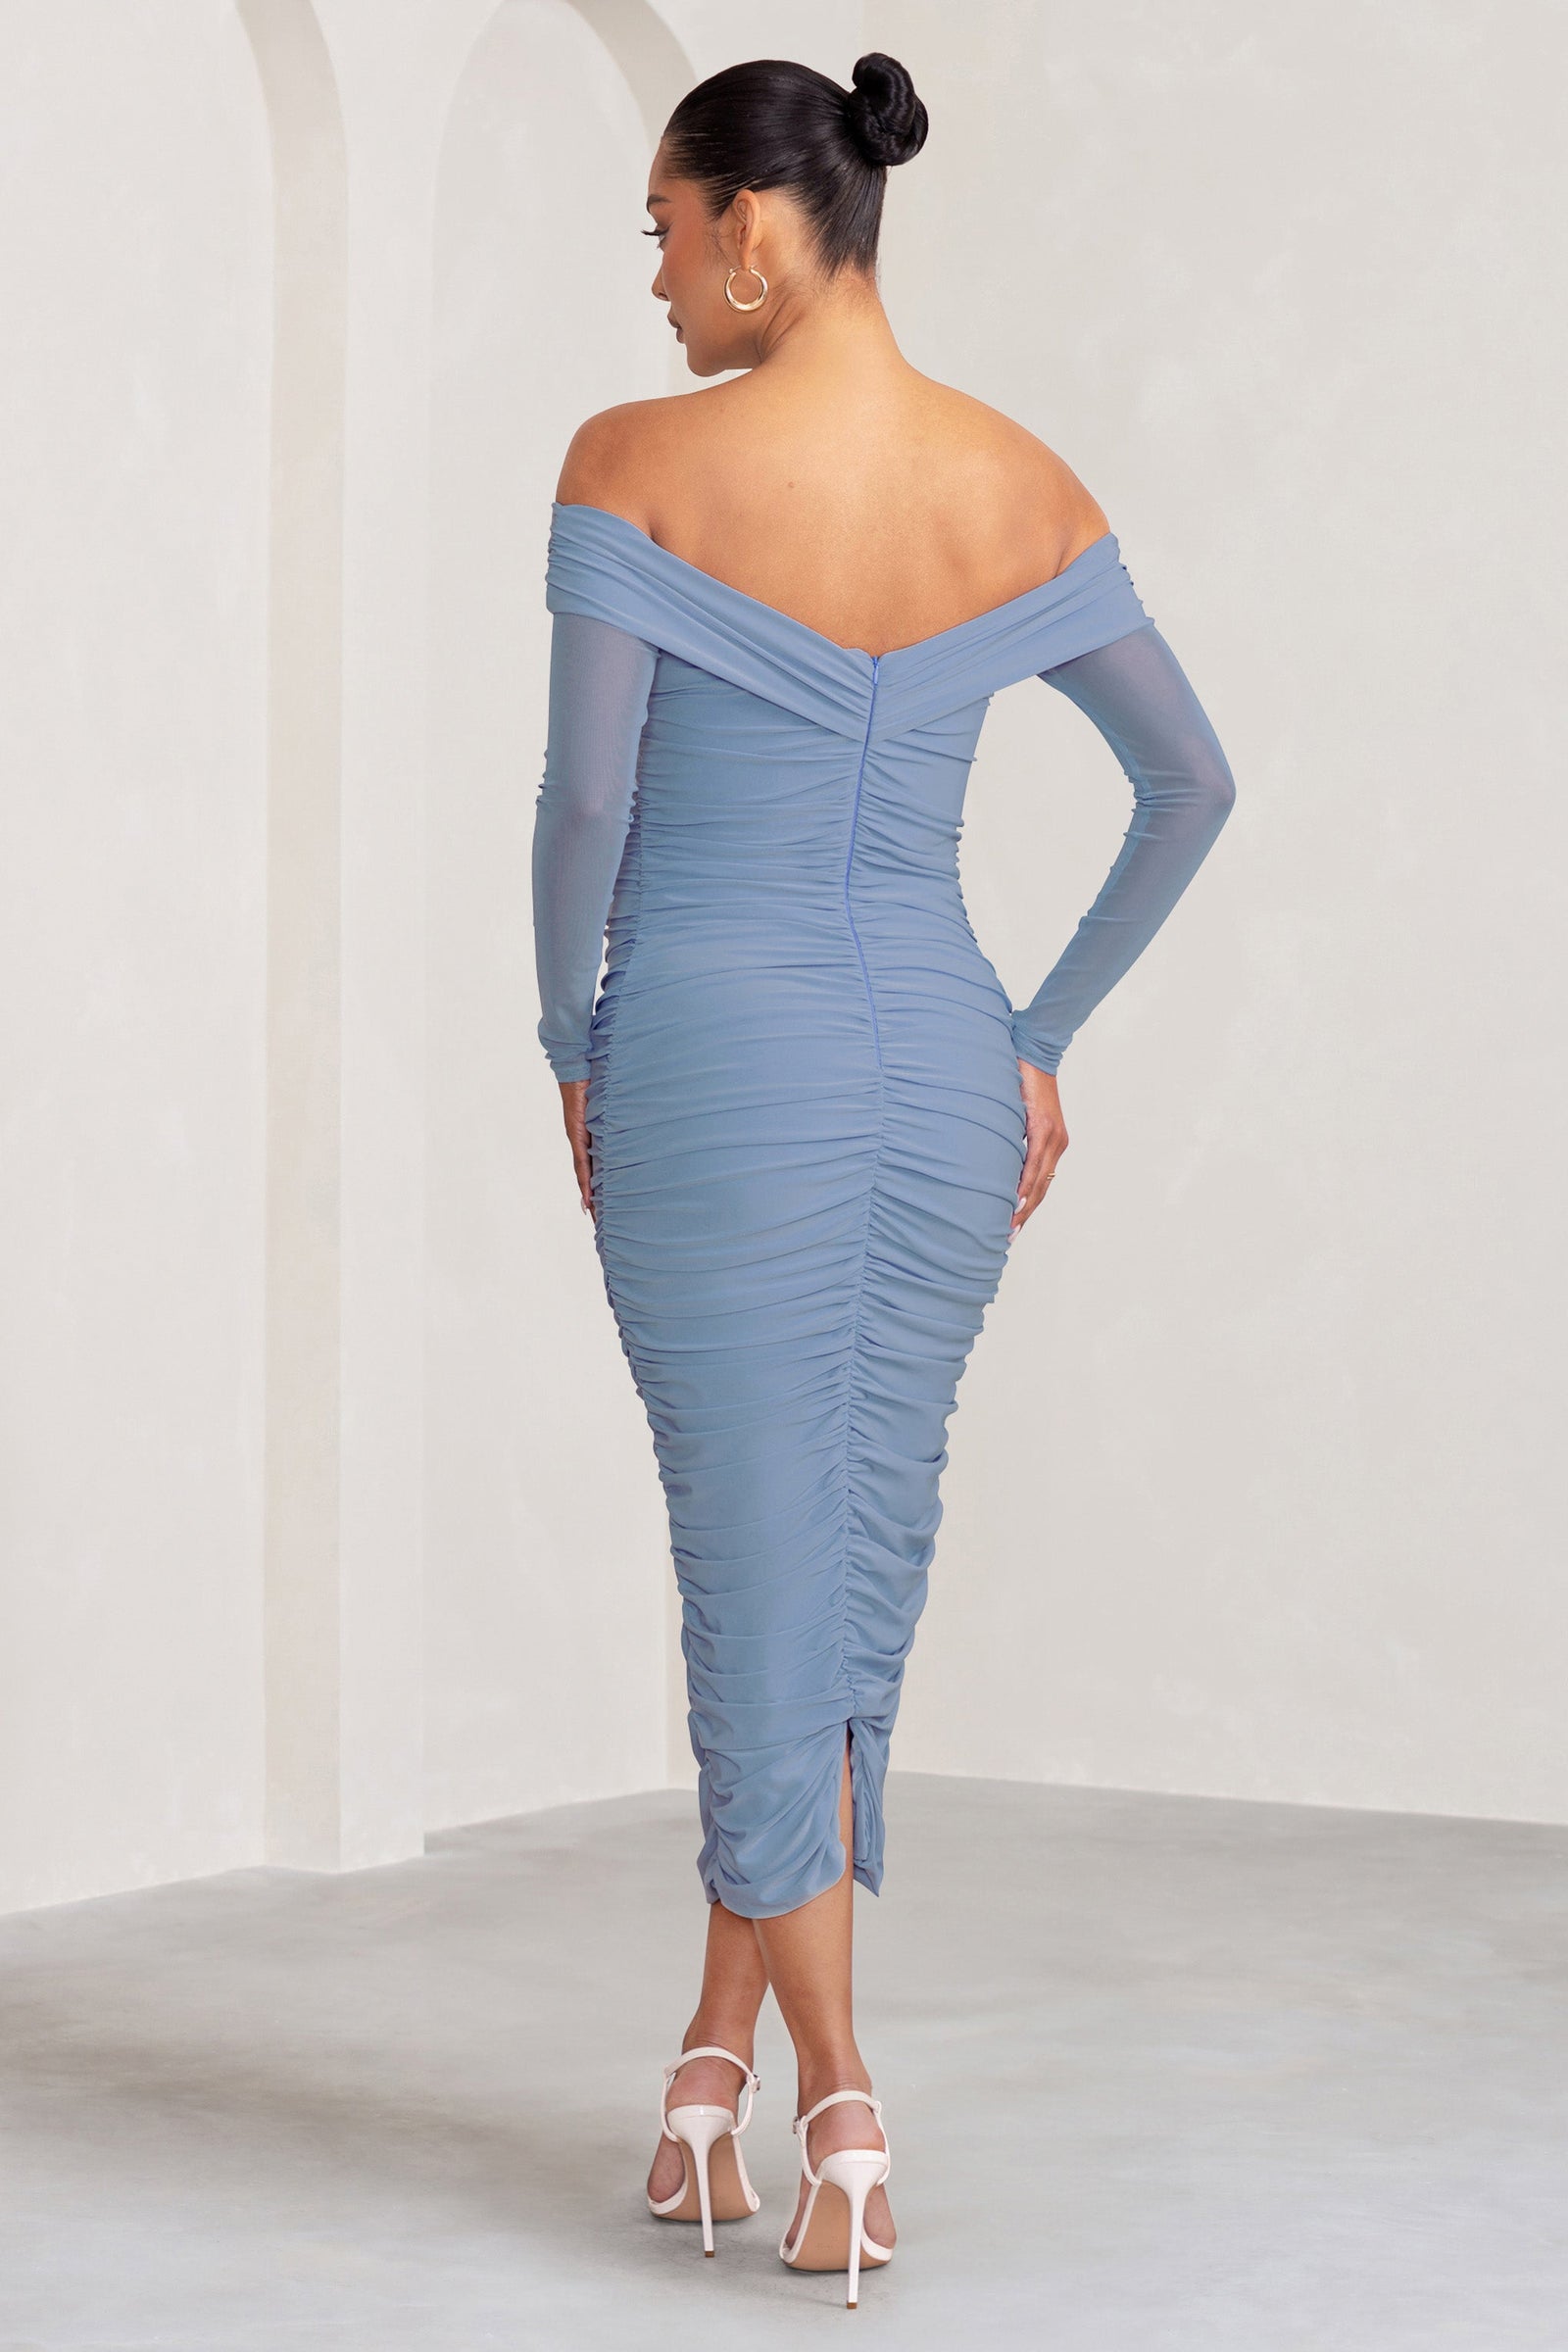 Amaryllis Powder Blue Maternity One Shoulder Maxi Dress with Cape Sl – Club  L London - USA